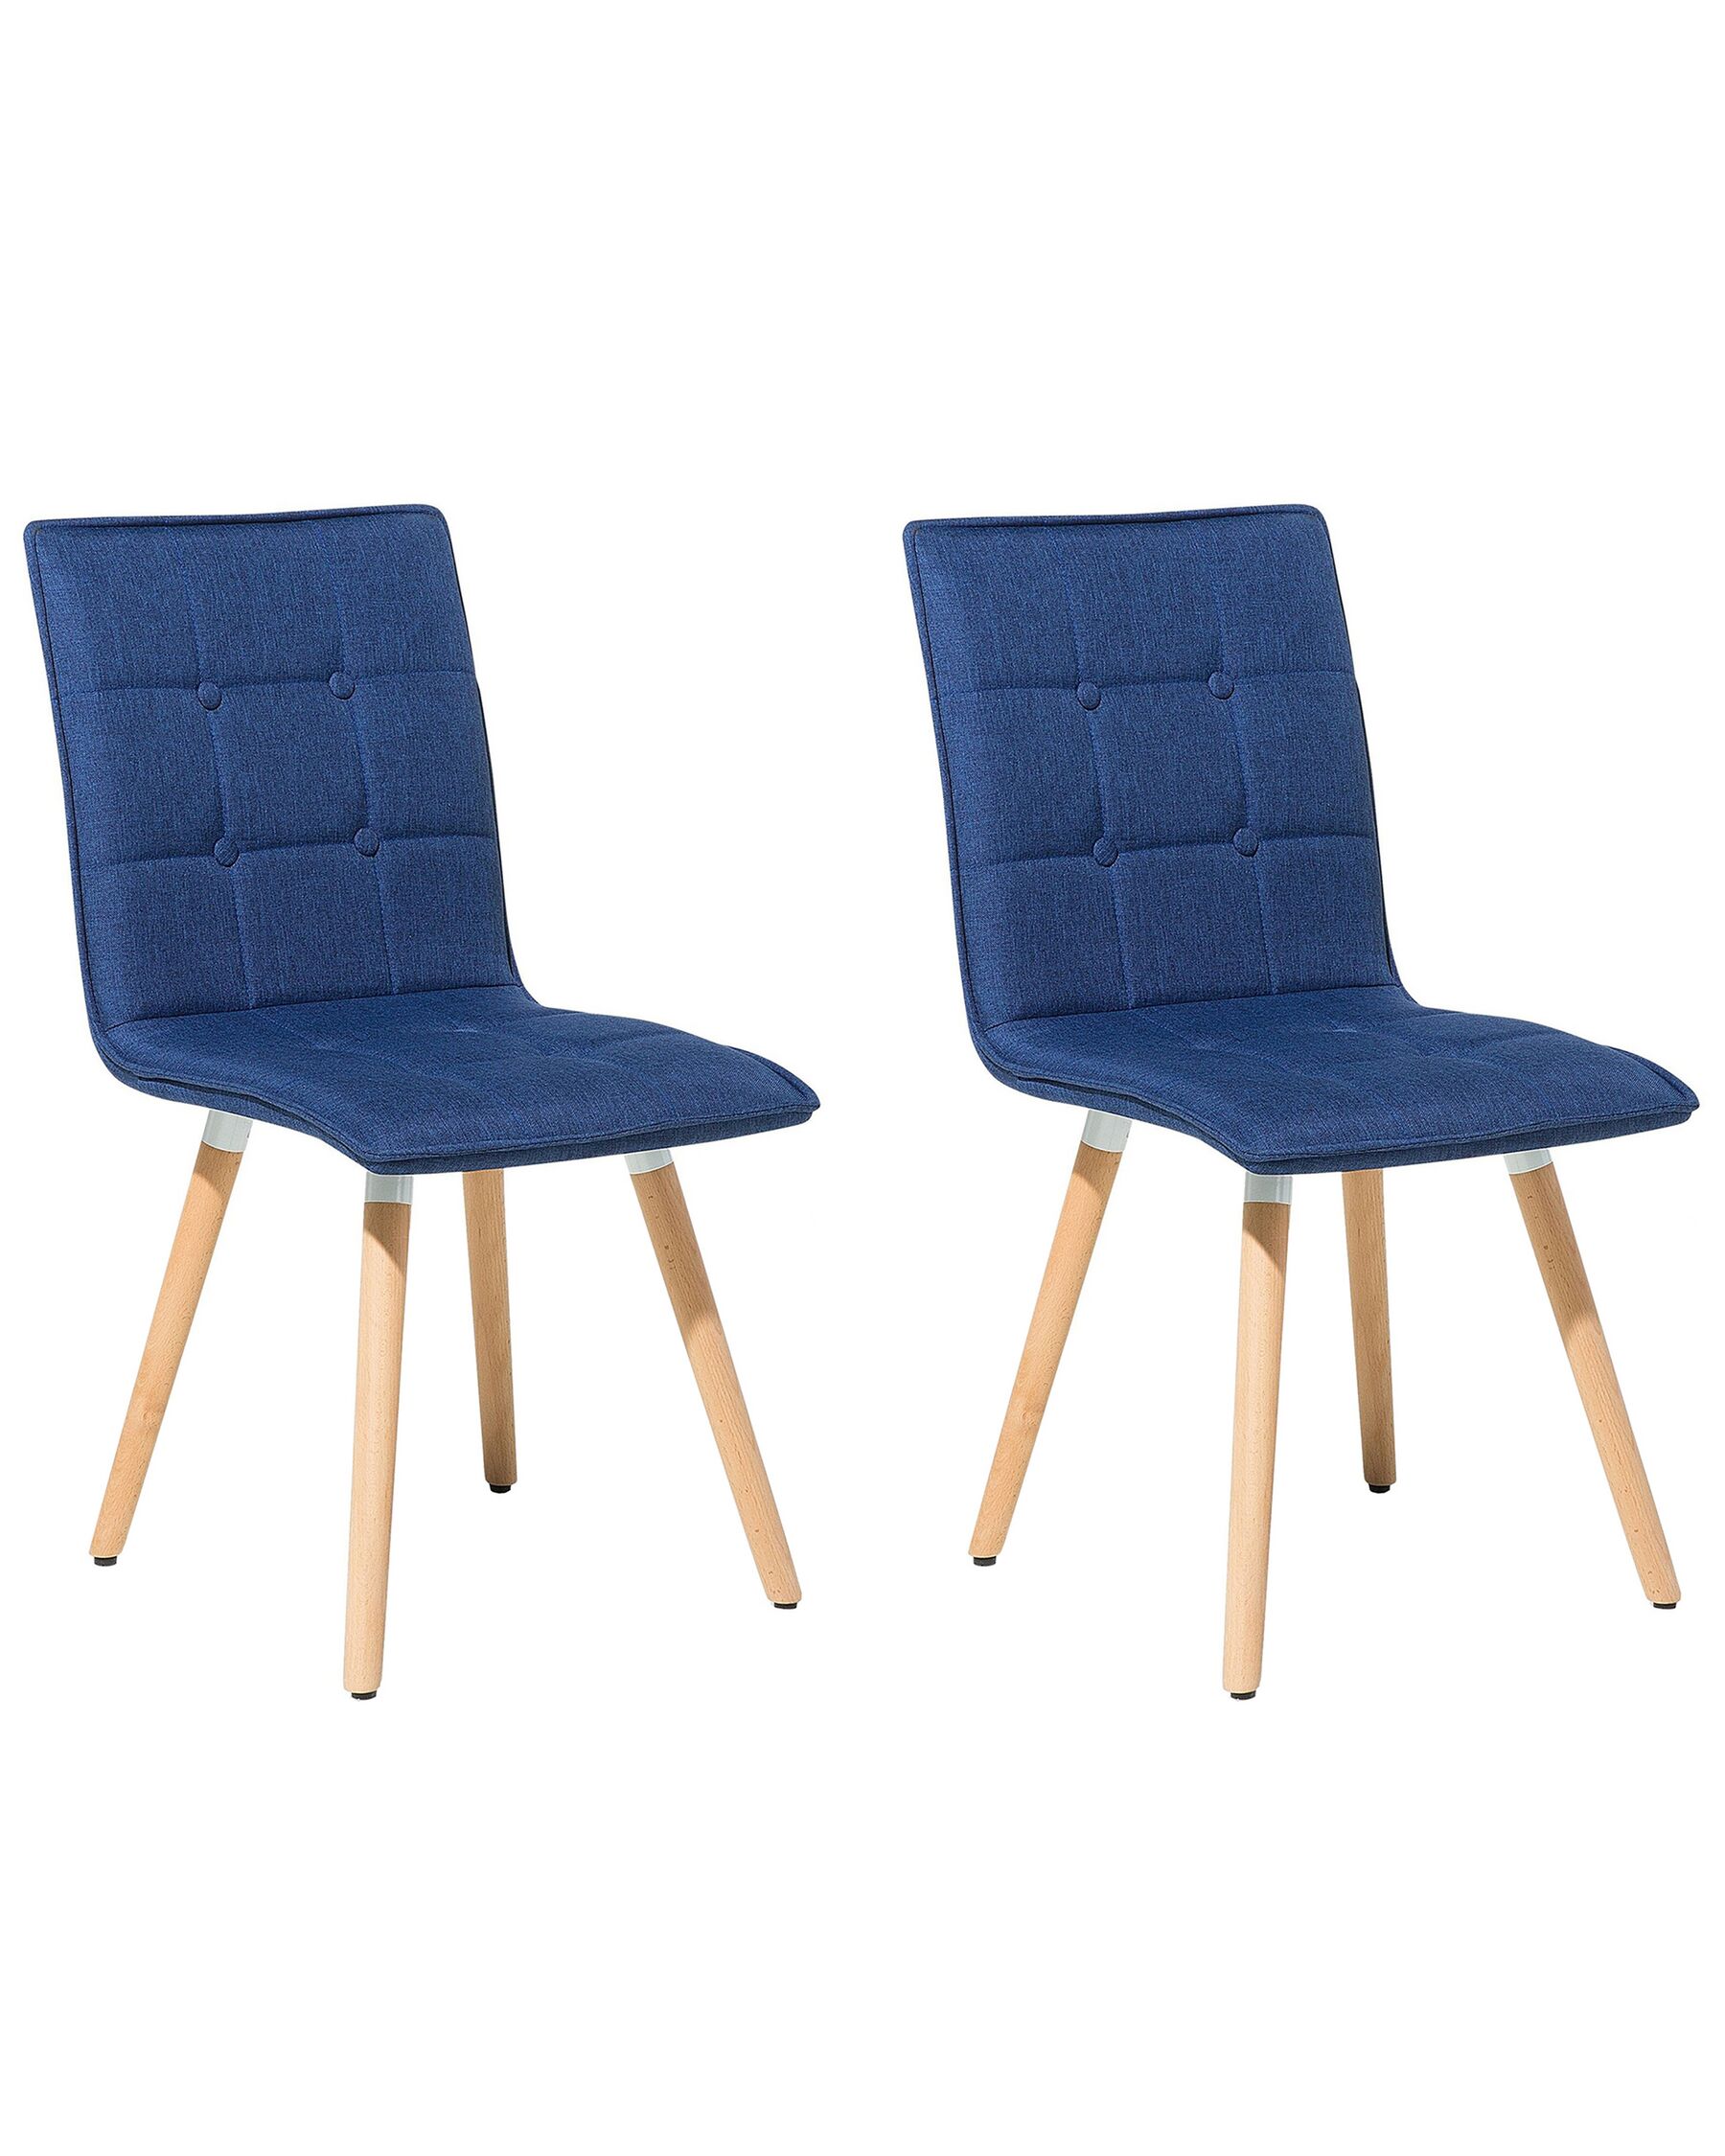 Stilvoller Stuhl 2er Set dekorative Versteppung Polsterbezug marineblau Brooklyn